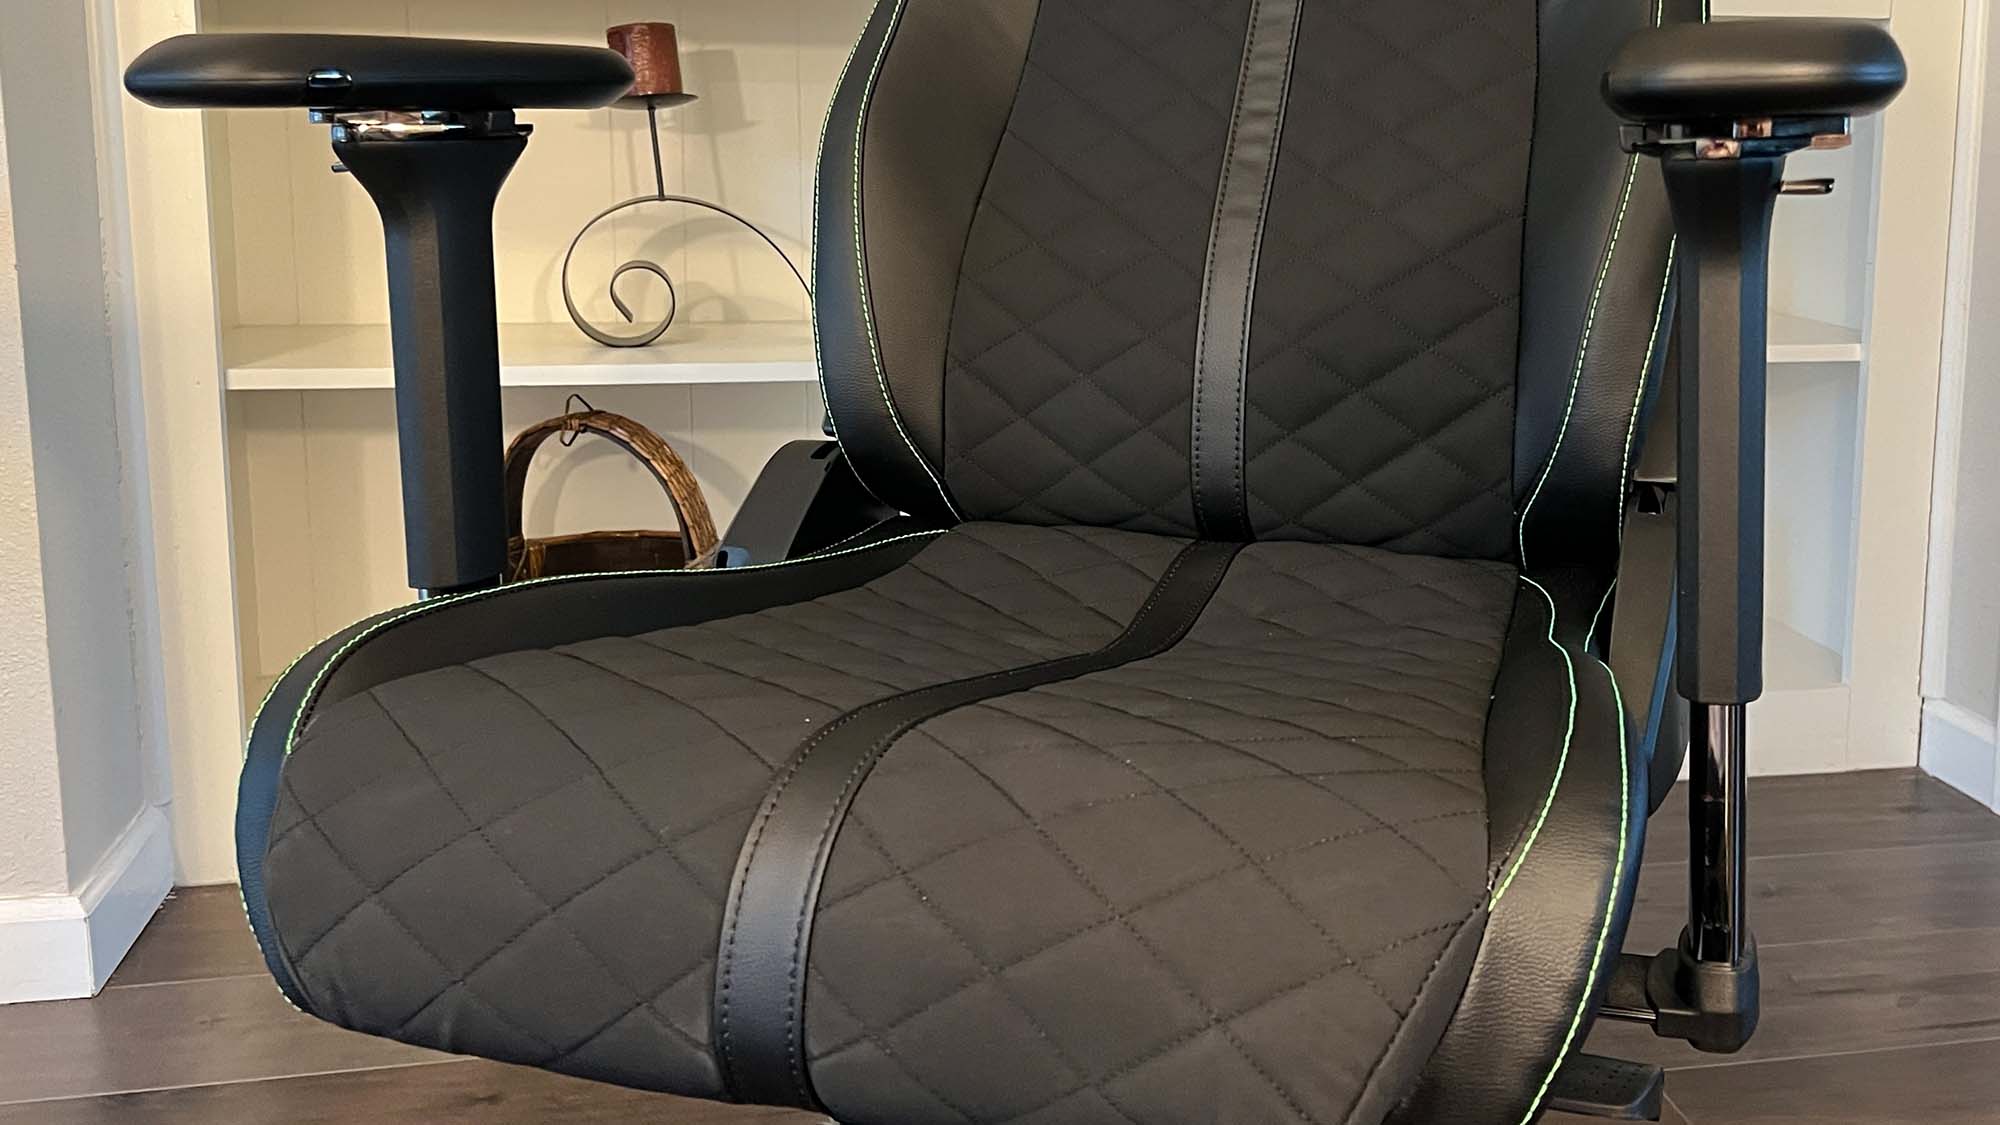 The Razer Enki's Seat Cushion